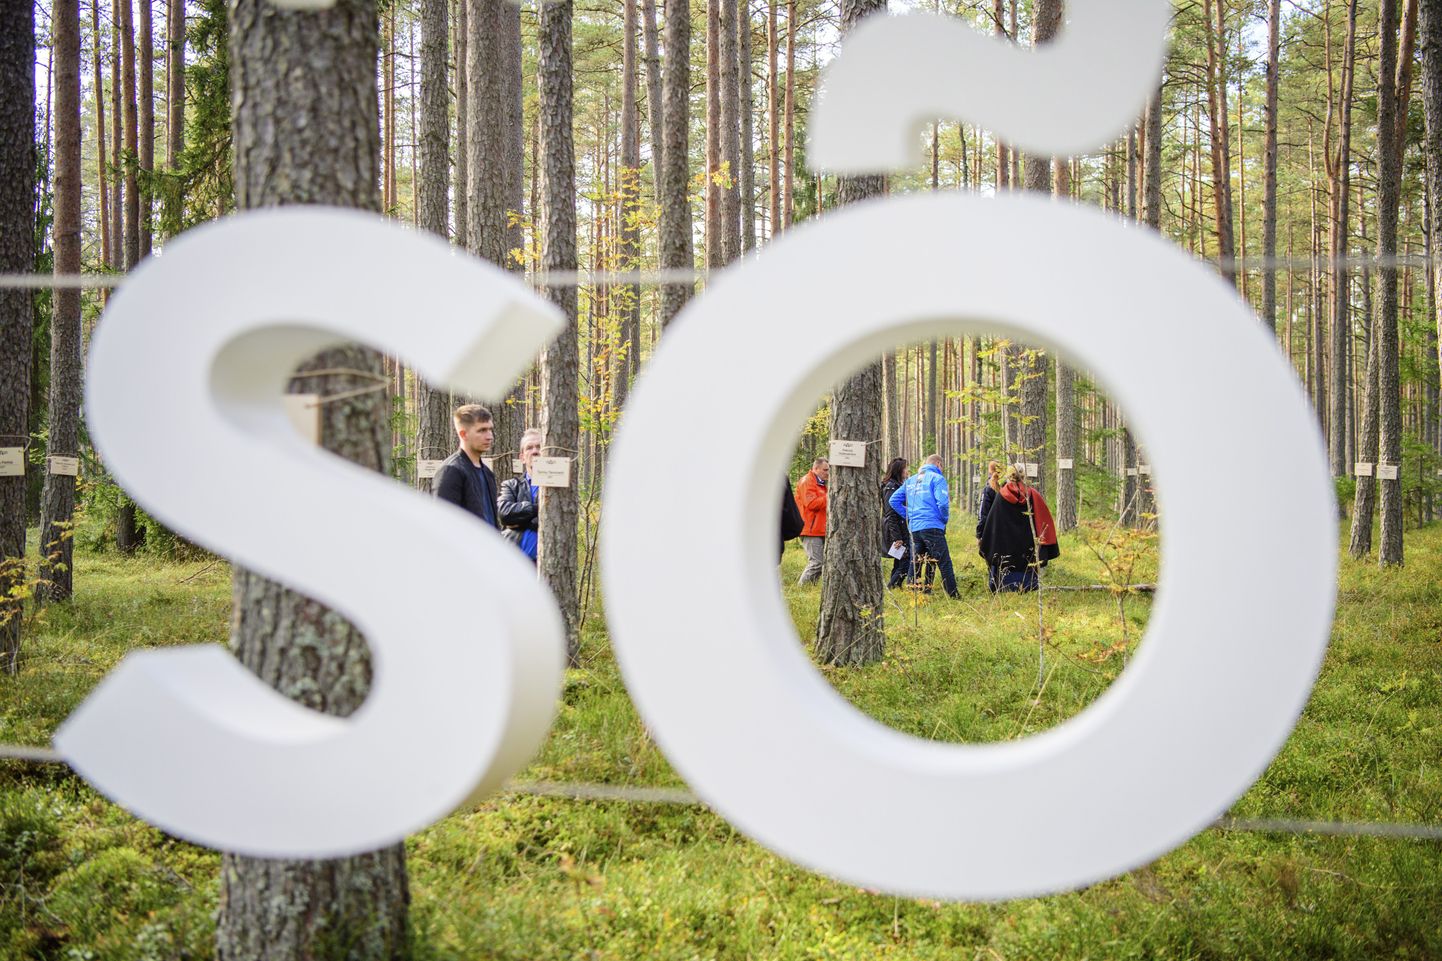 Läinud reedel avati Ettevõtluse Arendamise Sihtasutuse turismiarenduskeskuse initsiatiivil koostöös riigimetsa majandamise keskuse (RMK) ja Eesti Vabariigi 100. aastapäeva toimkonnaga Sõnamets.